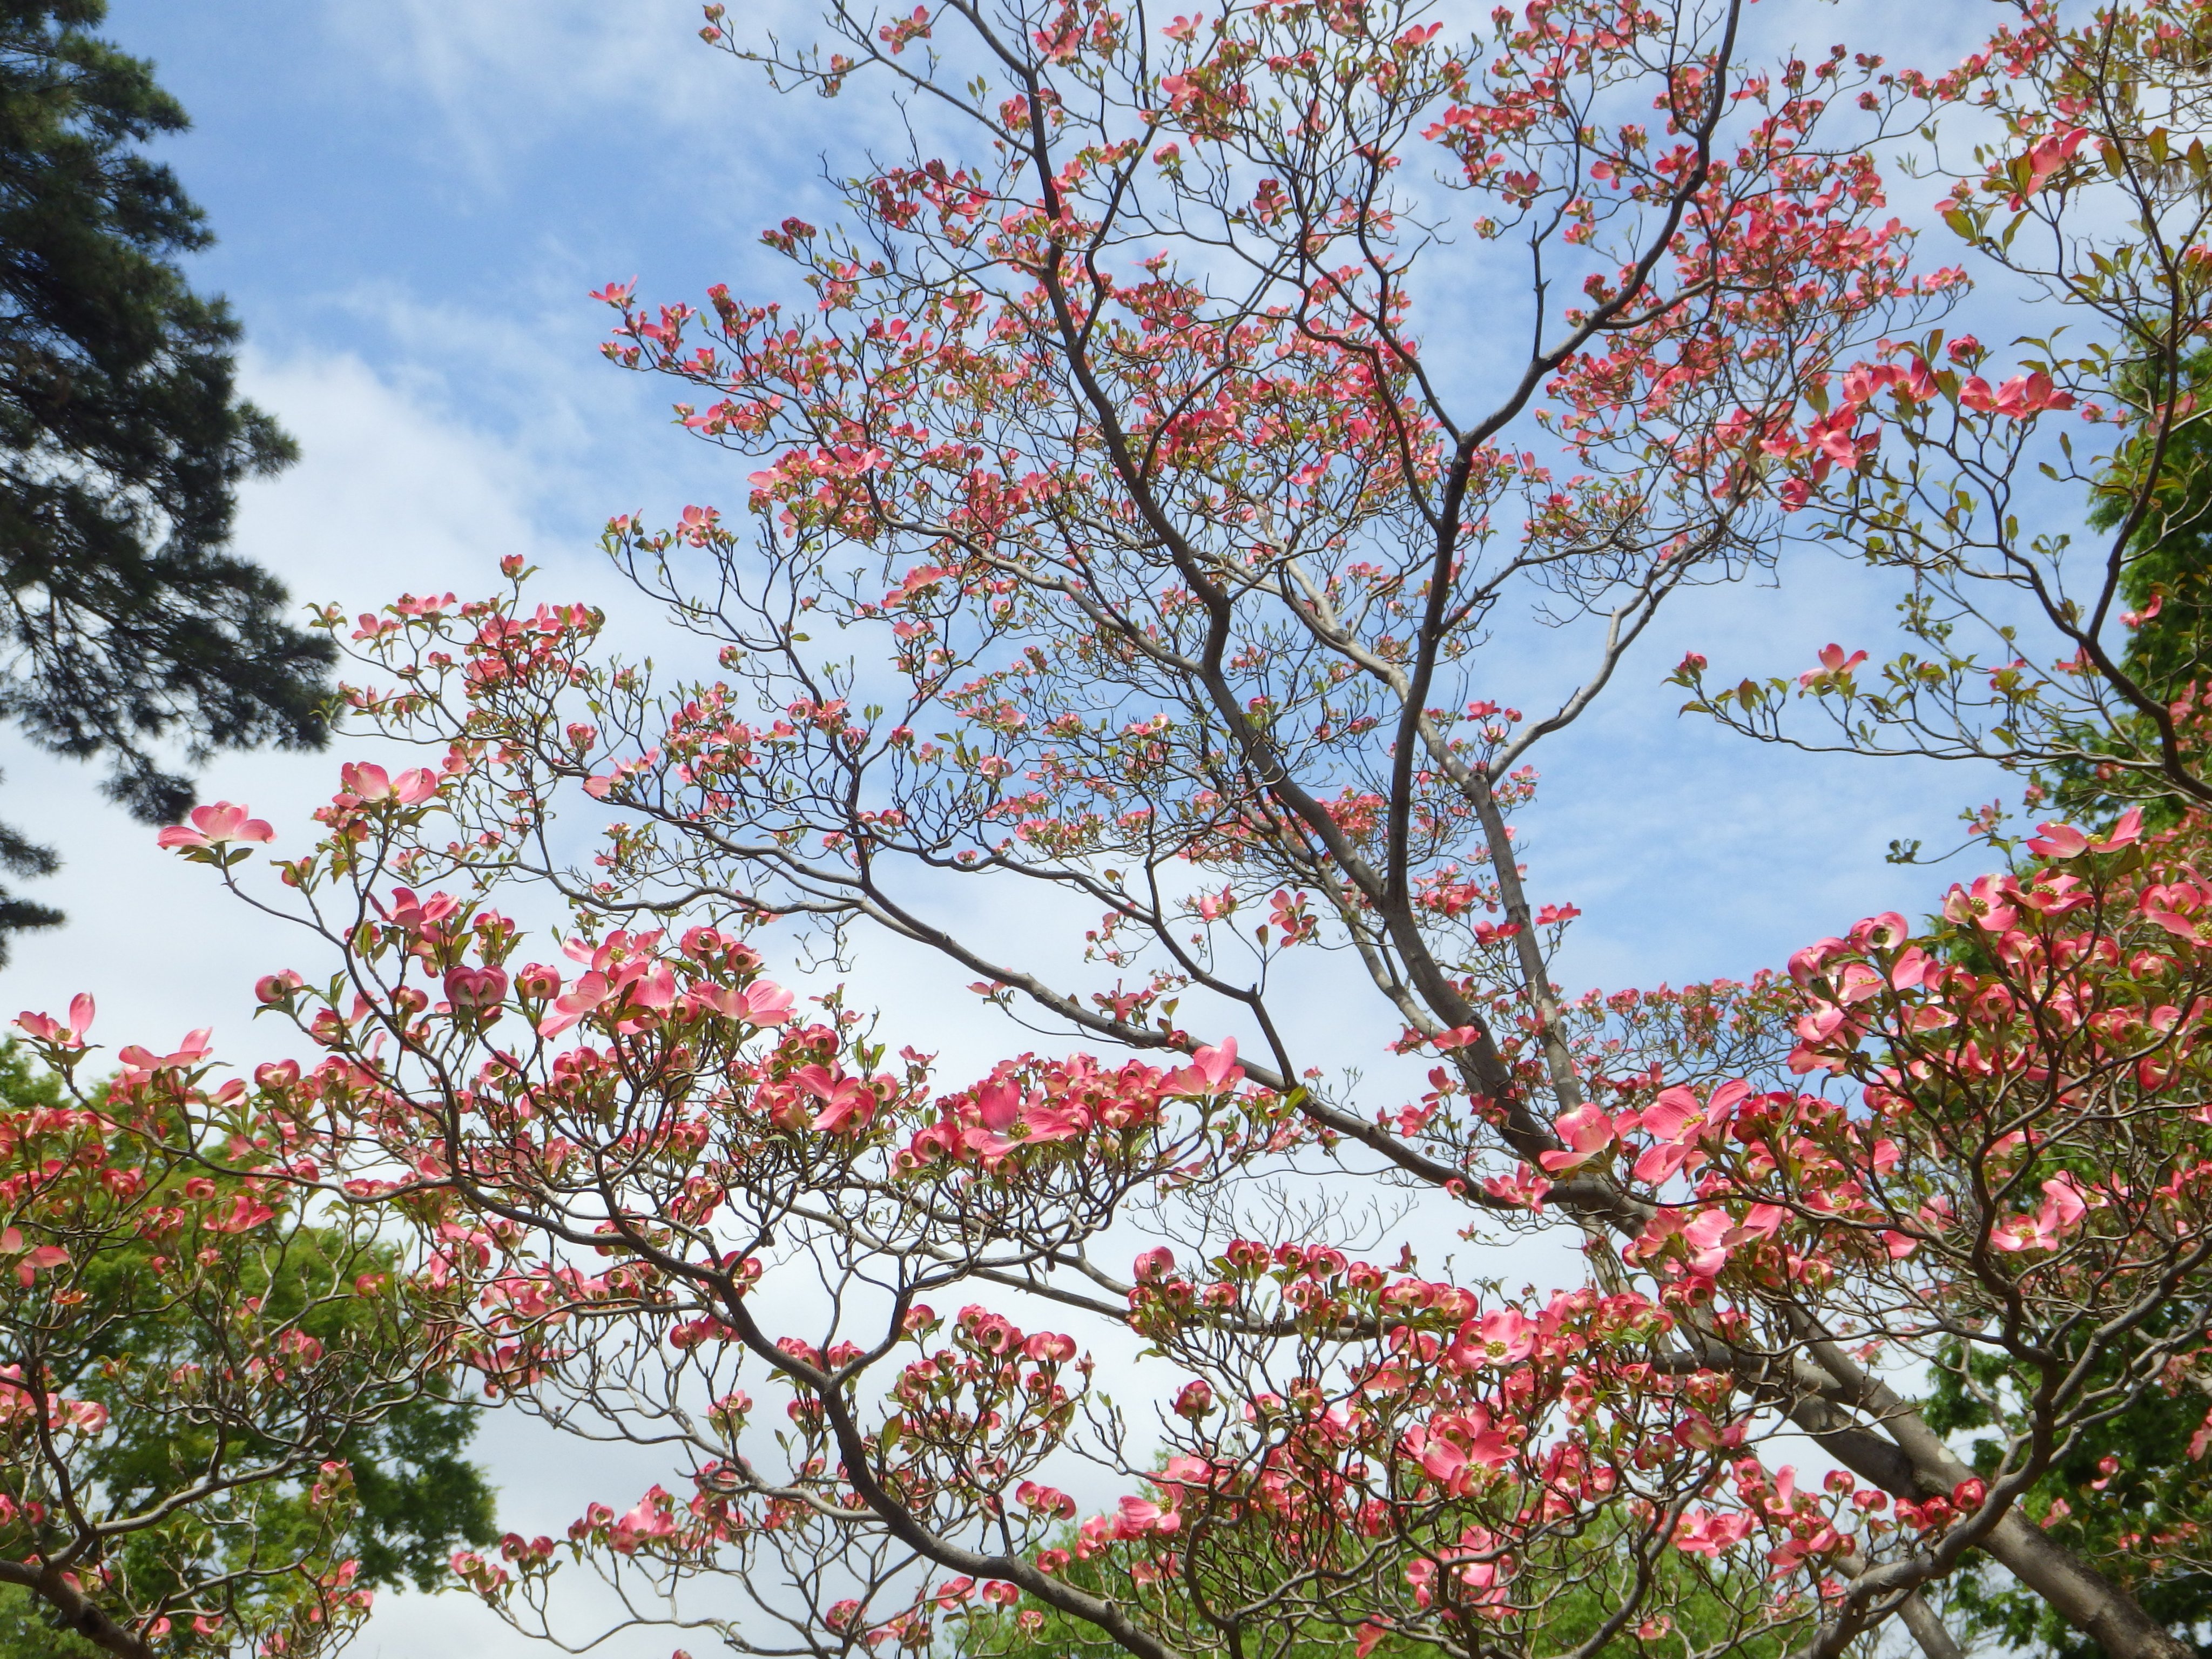 井の頭自然文化園 公式 園内のハナミズキも満開です ハナミズキは庭木や街路樹としても非常に人気がありますが 元々は桜のお礼としてアメリカから日本へ贈られてきた樹木です 園内では紅白ともに咲いていて 白ハナミズキは場所により サトザクラの